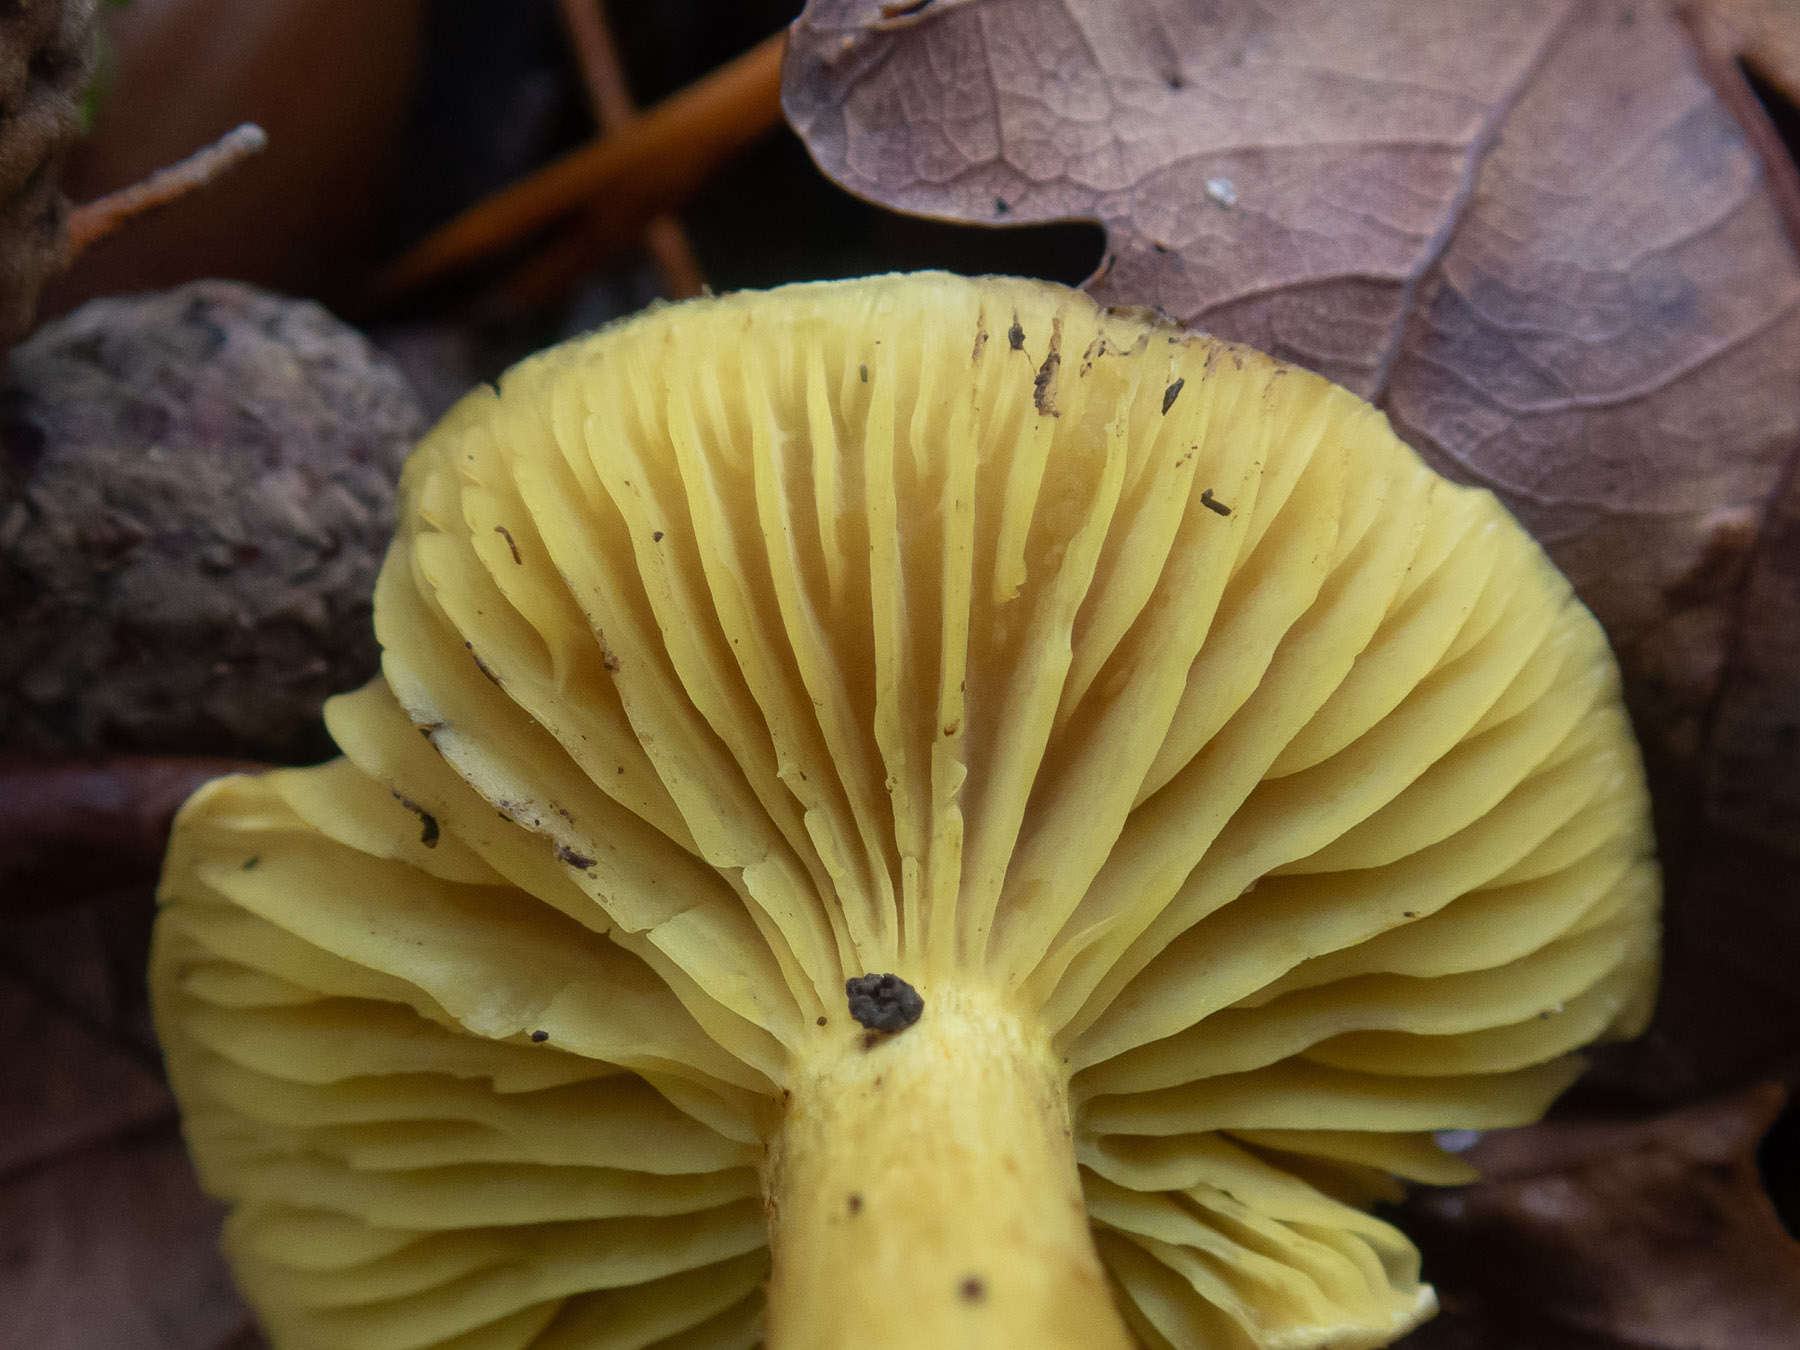 Рядовка серно-жёлтая (Tricholoma sulphureum) в природном парке G?rv?ln, октябрь 2020 года. Автор фото: Сутормина Марина